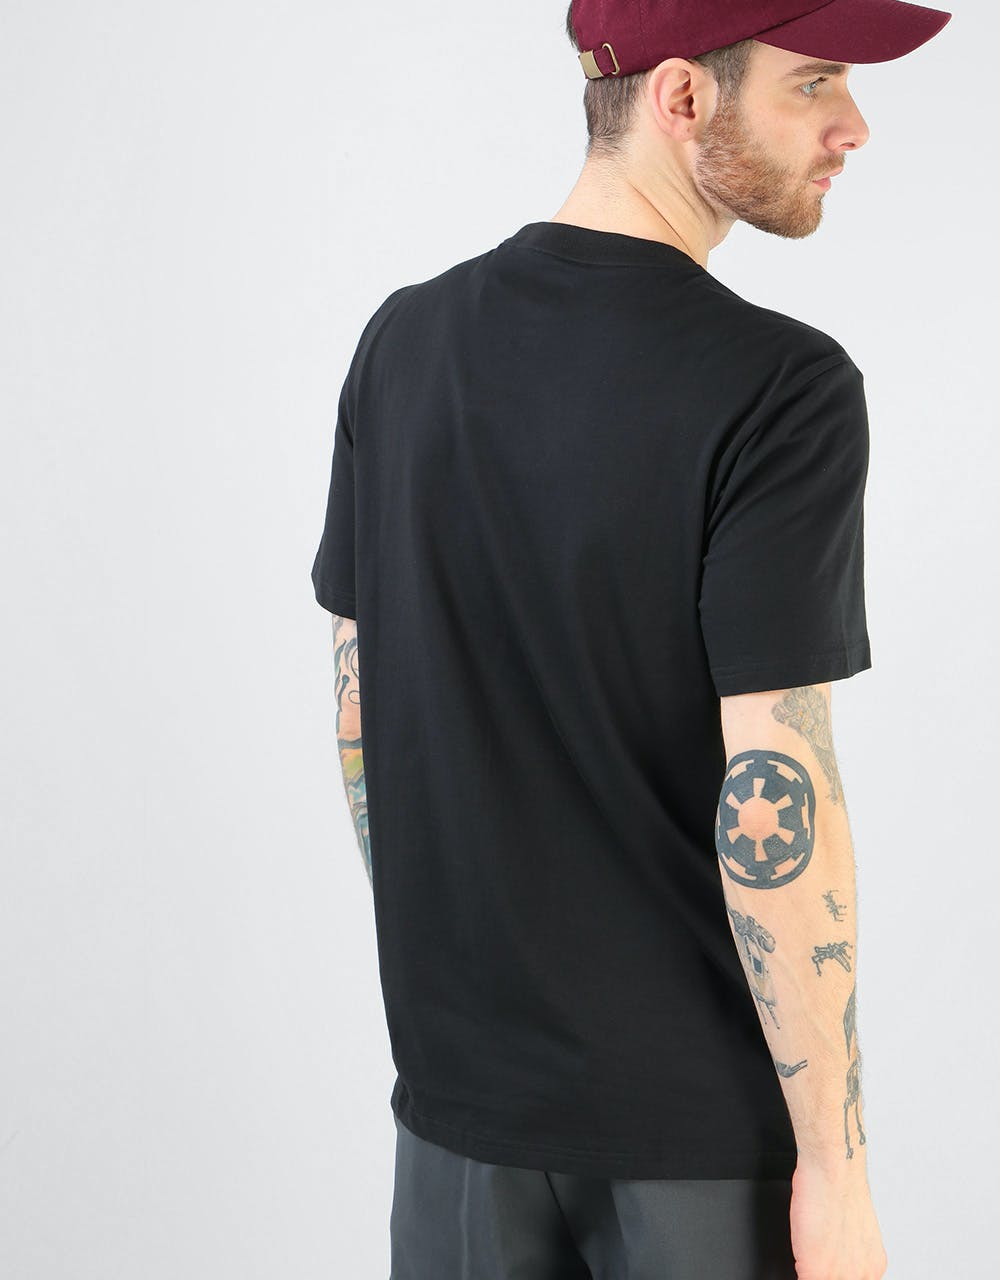 Adidas BB 2.0 T-Shirt - Black